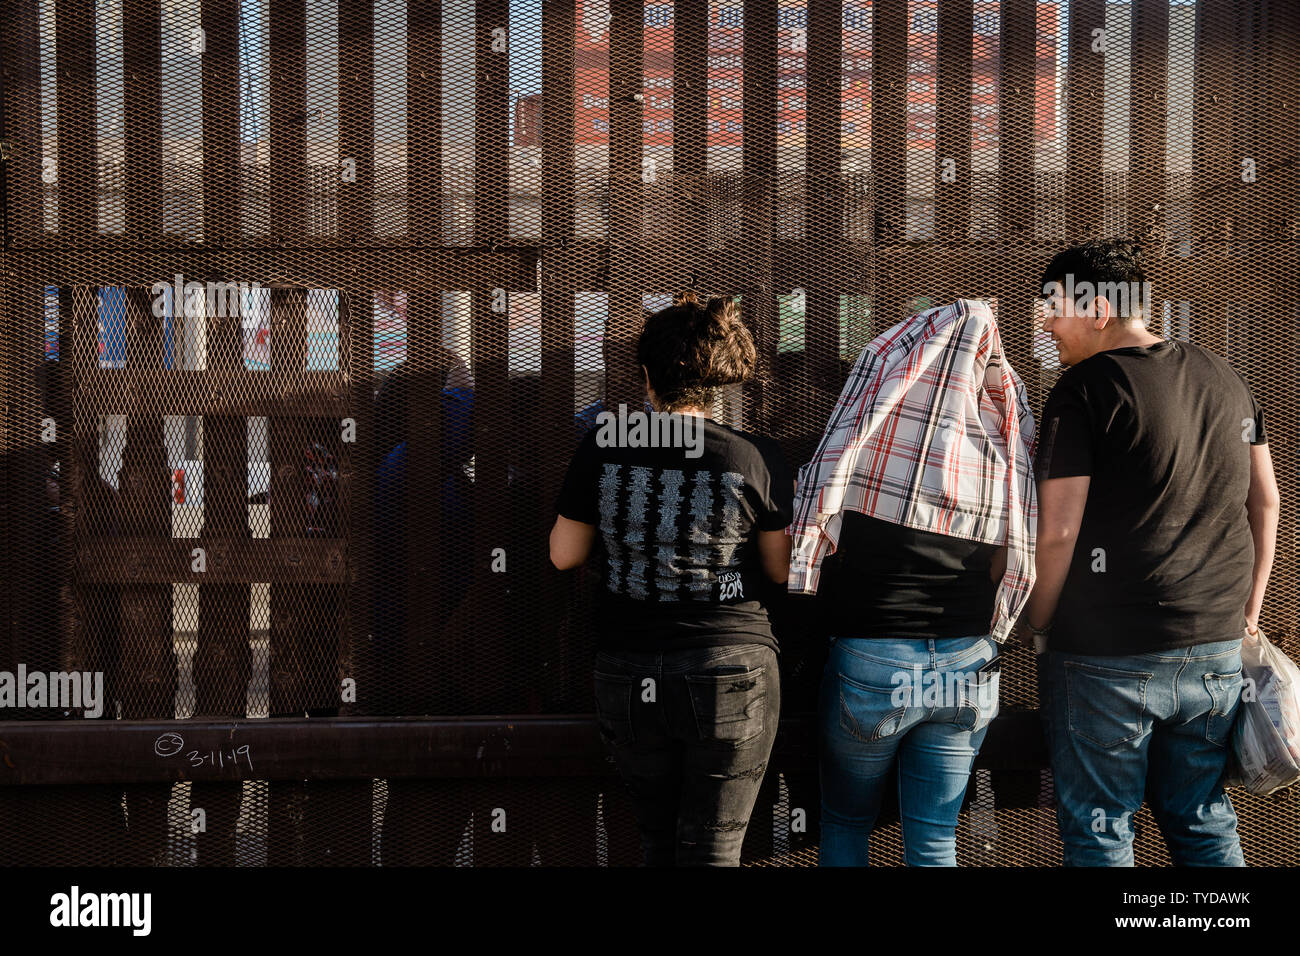 Als die Sonne untergeht einer Familie, die durch eine Grenze getrennt ist, Zaun Gespräche miteinander entlang der US-mexikanischen Grenze in Calexico, Kalifornien am 4. April 2019. Foto von Ariana Drehsler/UPI Stockfoto